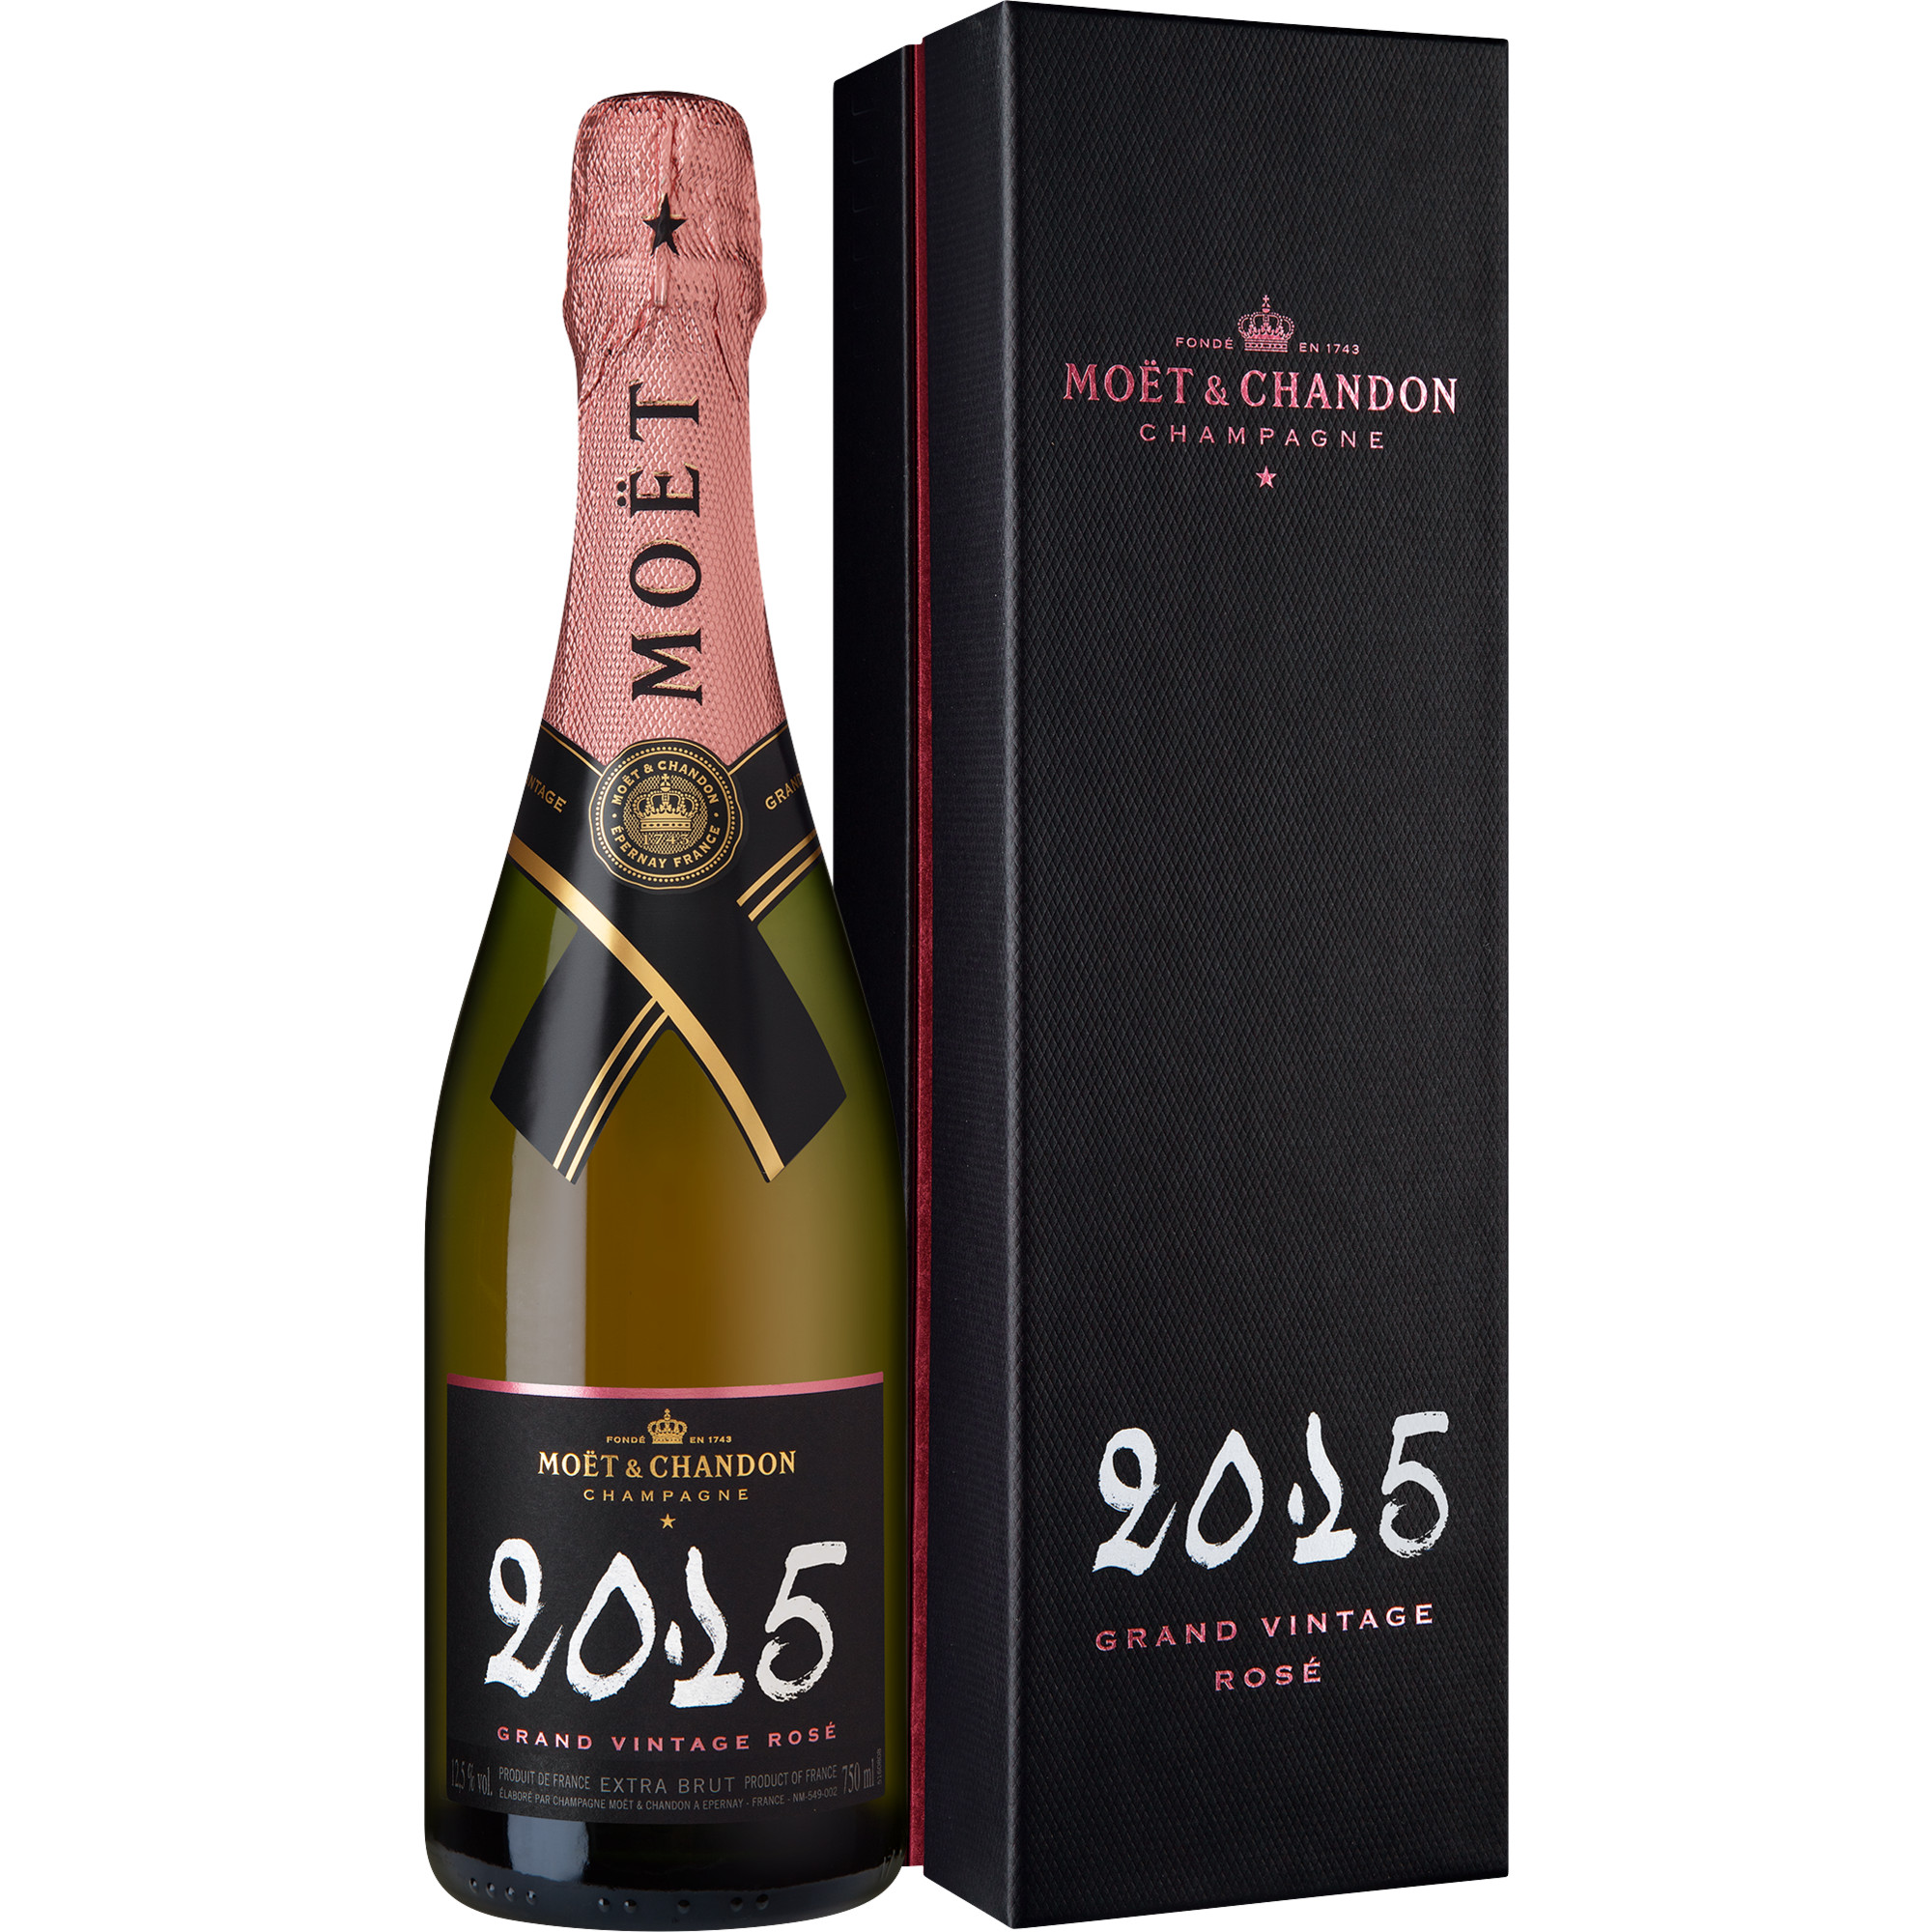 Champagne Moet & Chandon Grand Vintage Rosé, Brut, Champagne AC, Geschenketui, Champagne, 2015, Schaumwein  Champagner Hawesko